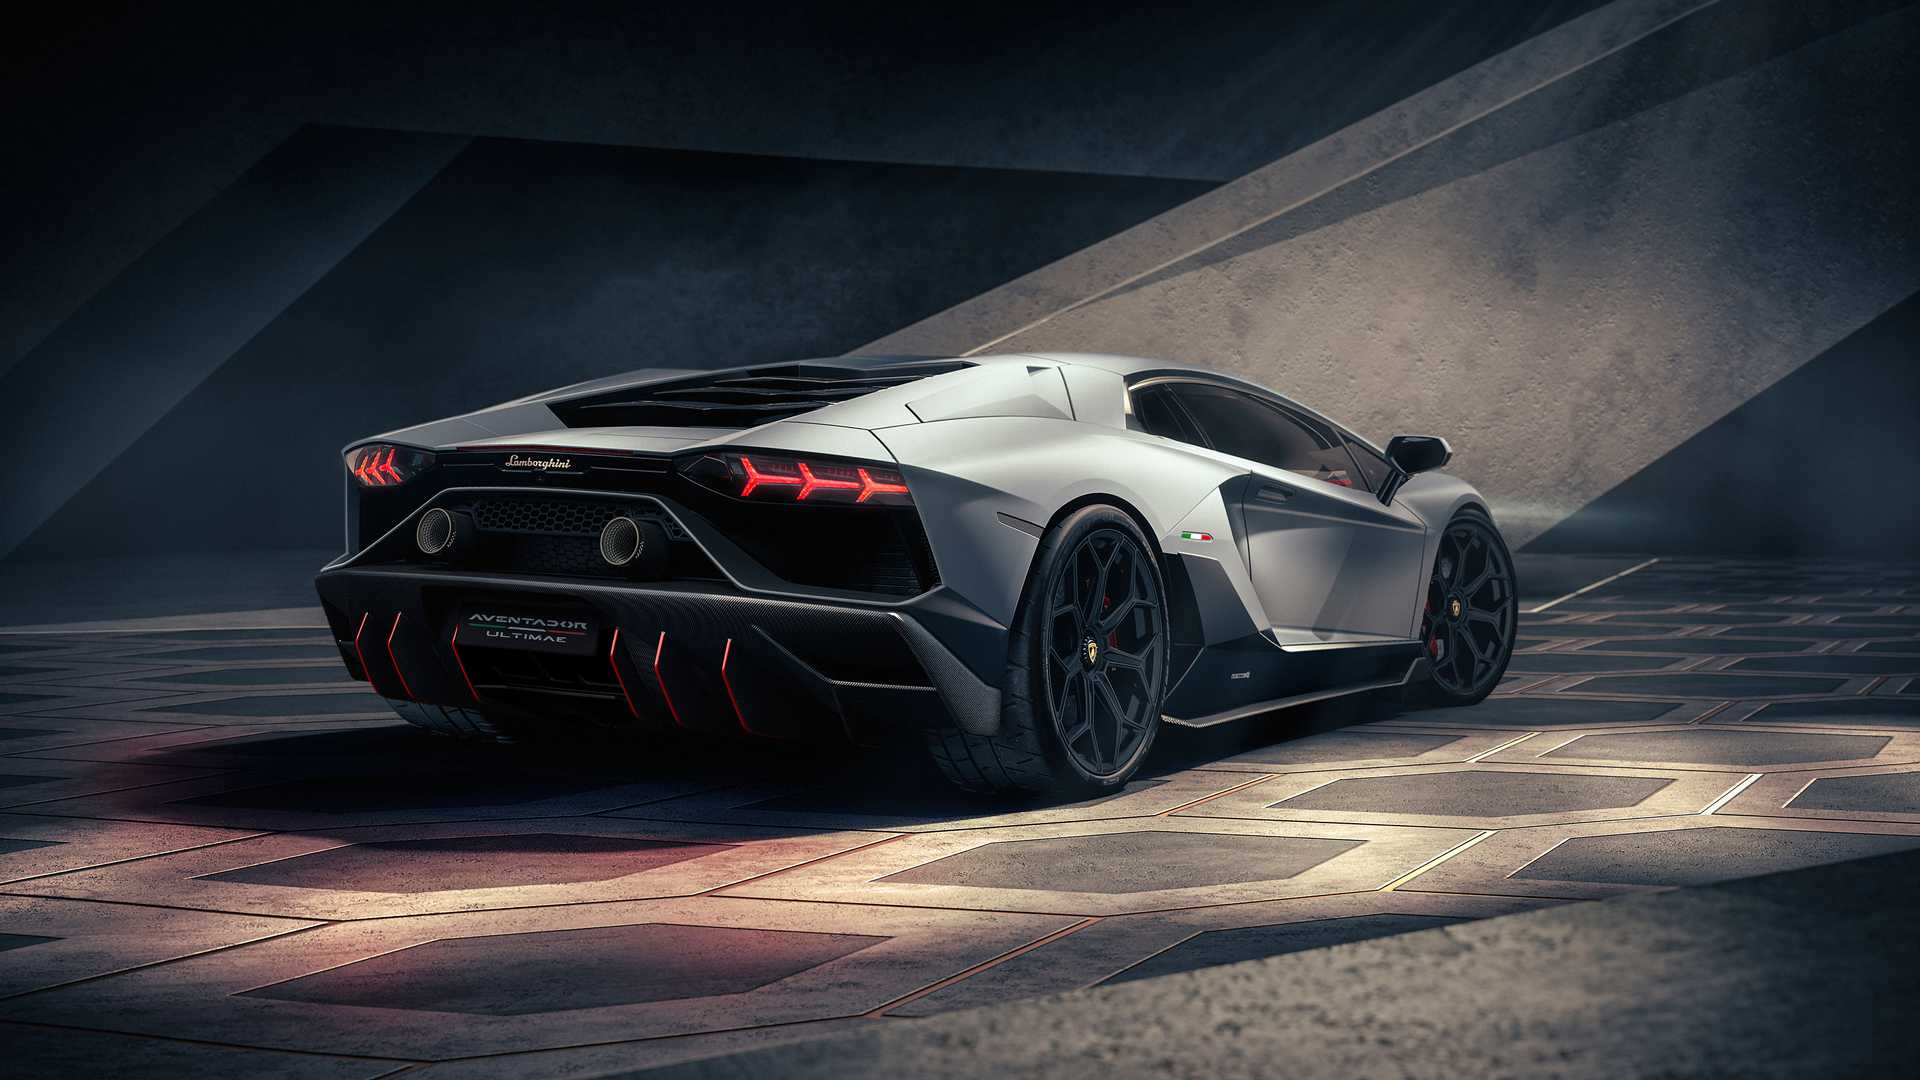 Ra mắt Lamborghini Aventador Ultimae - Siêu bò mạnh nhất chia tay Aventador